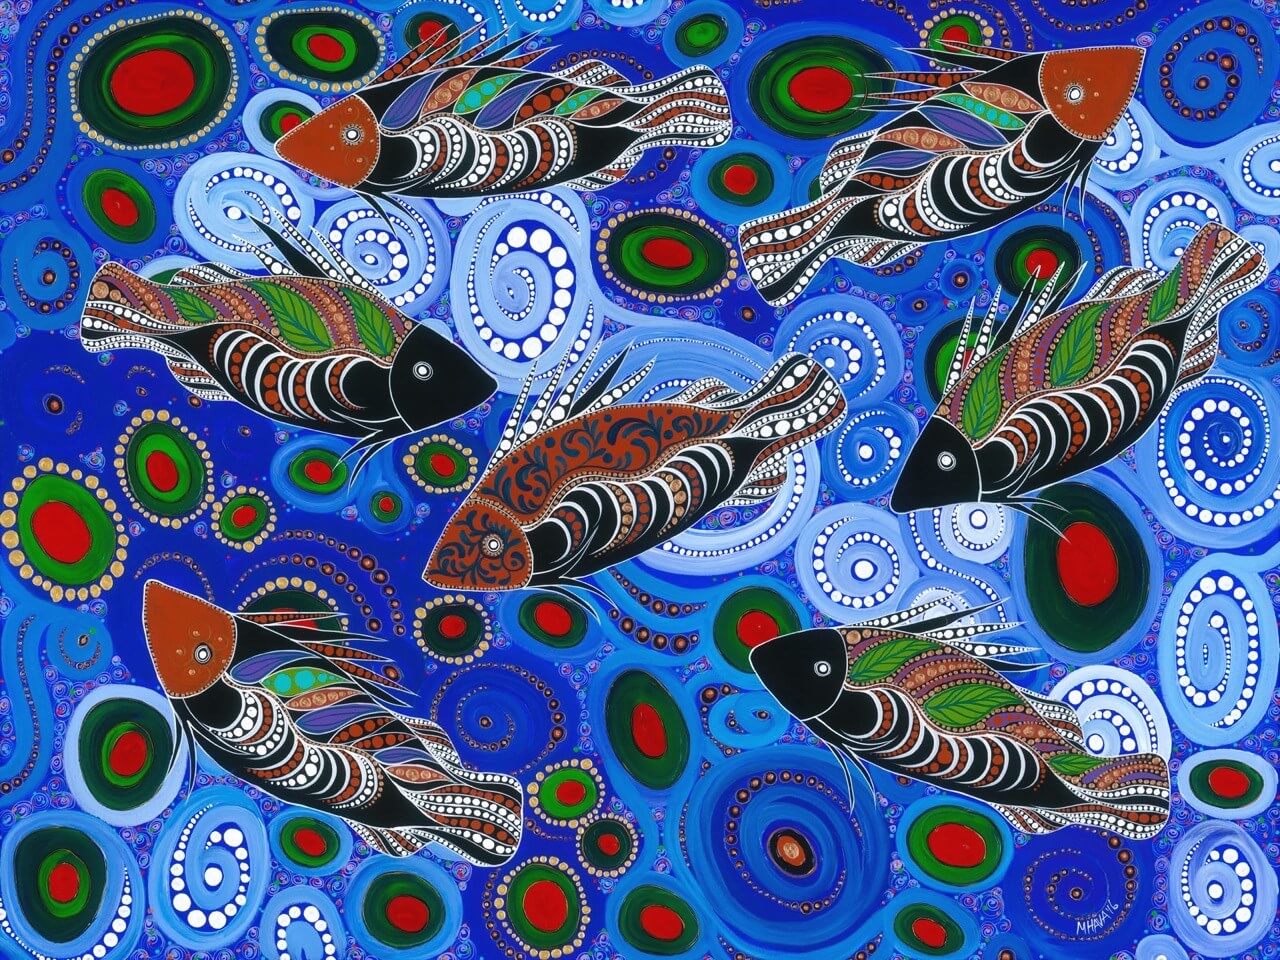 Contemporary aboriginal art